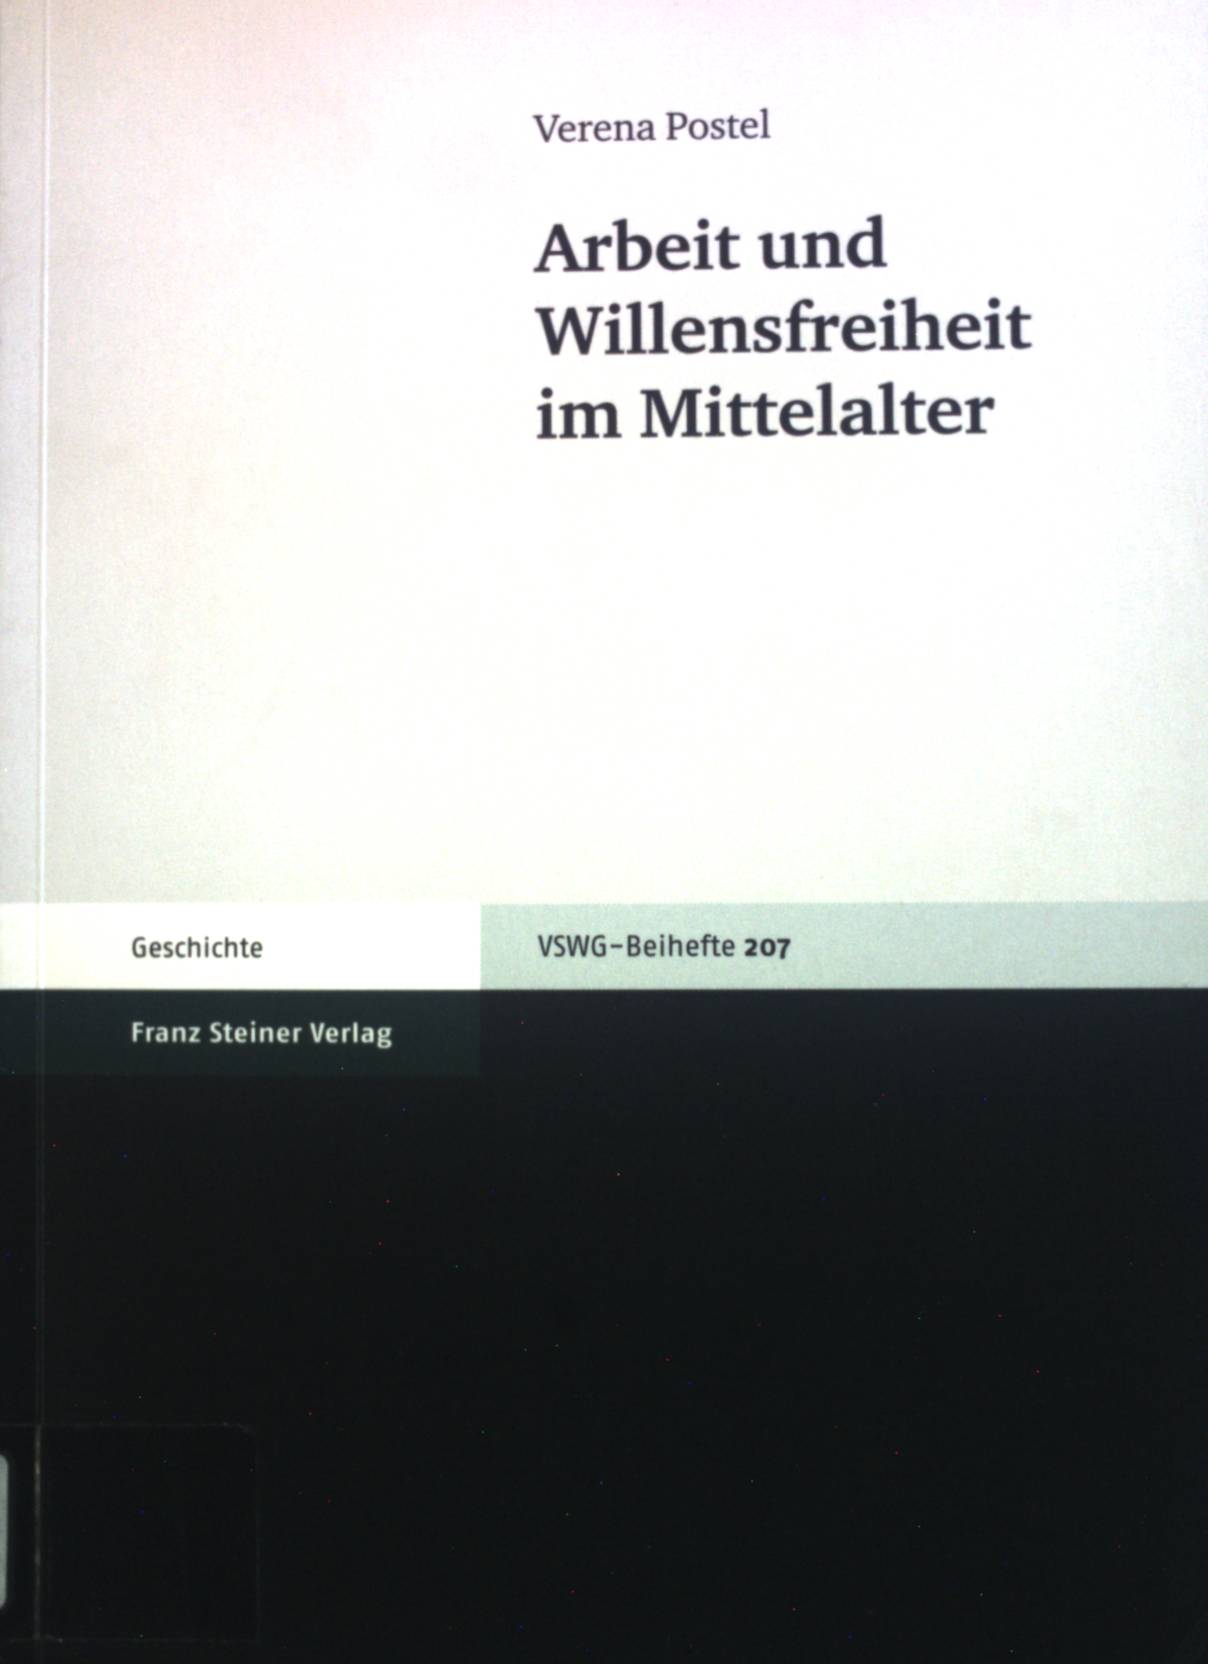 Arbeit und Willensfreiheit im Mittelalter. Vierteljahrschrift für Sozial- und Wirtschaftsgeschichte / Beihefte ; Nr. 207; Geschichte - Epp, Verena